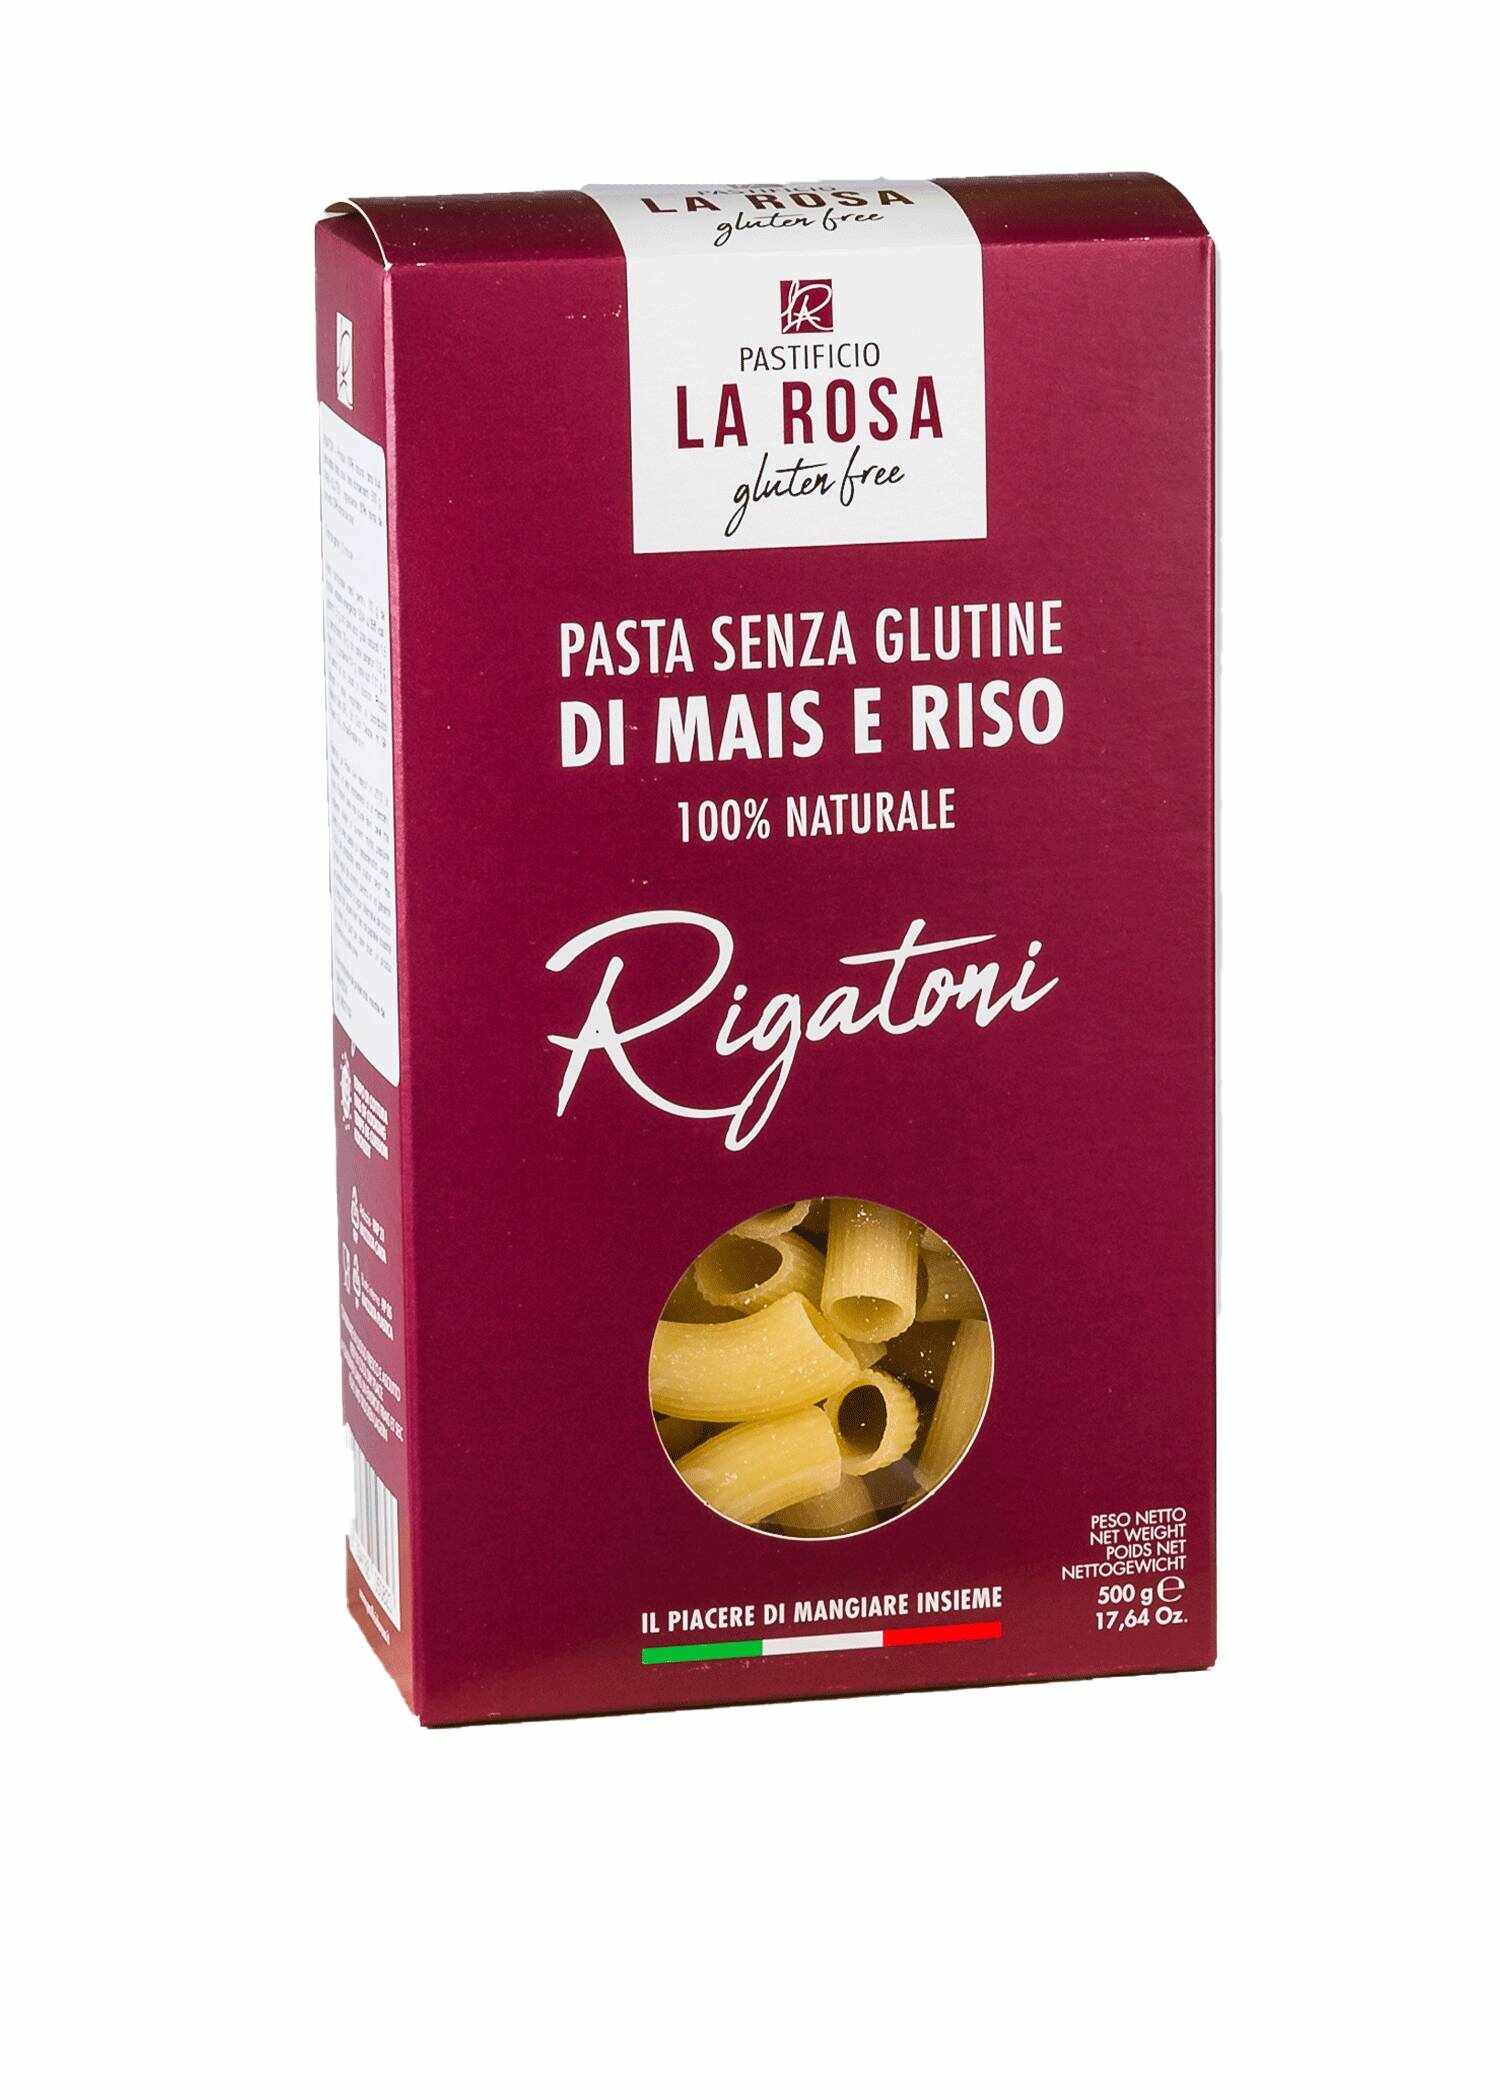 Rigatoni, fara gluten, 500g - La Rosa